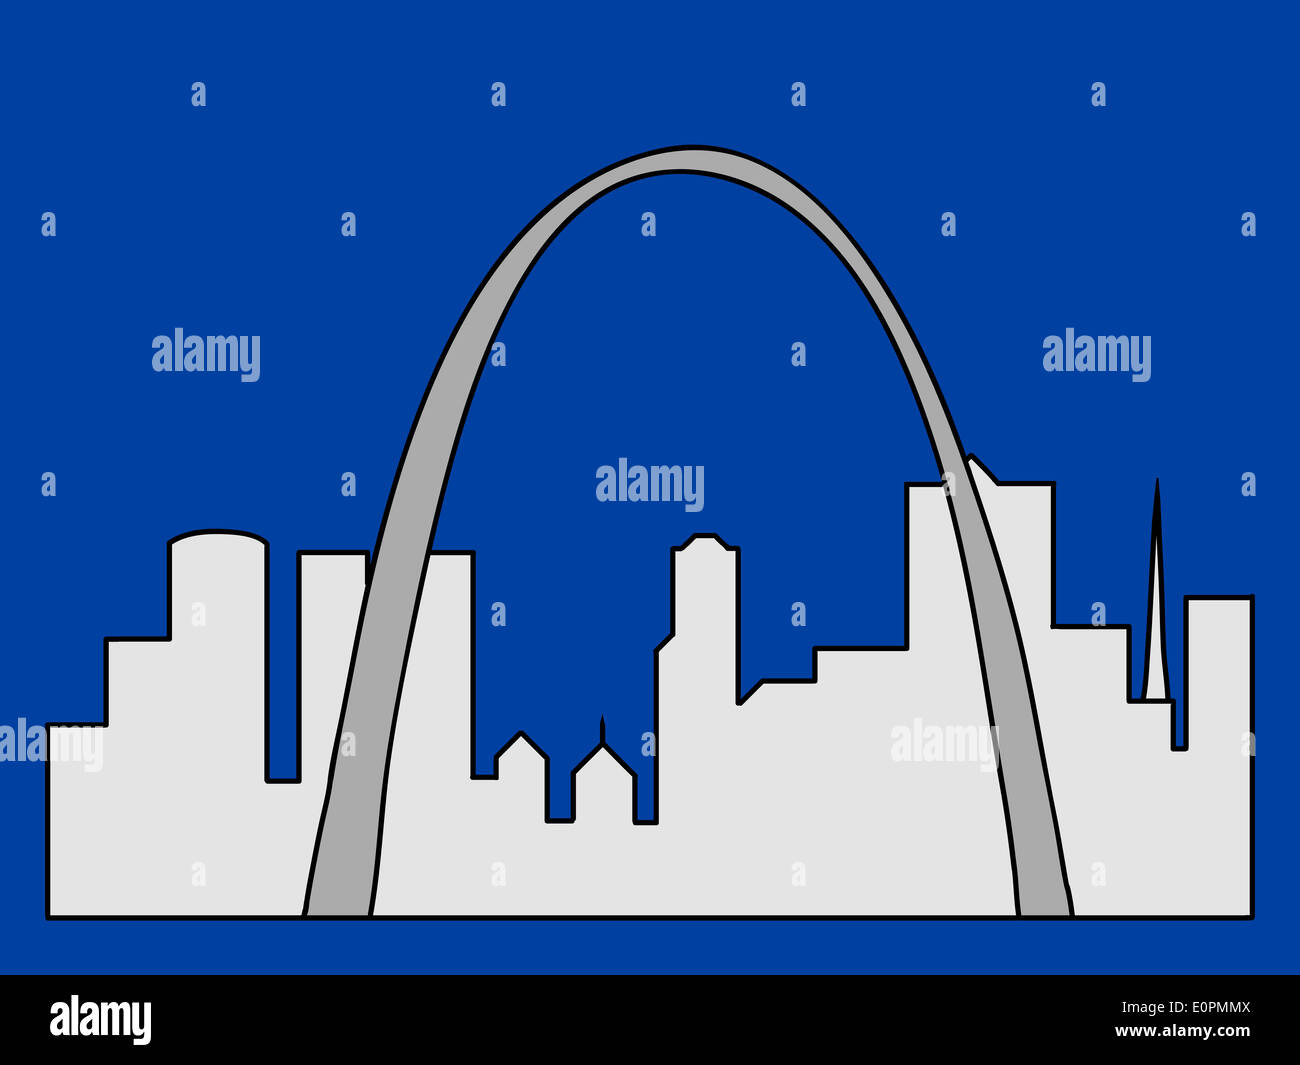 St Louis skyline illustration Stock Photo